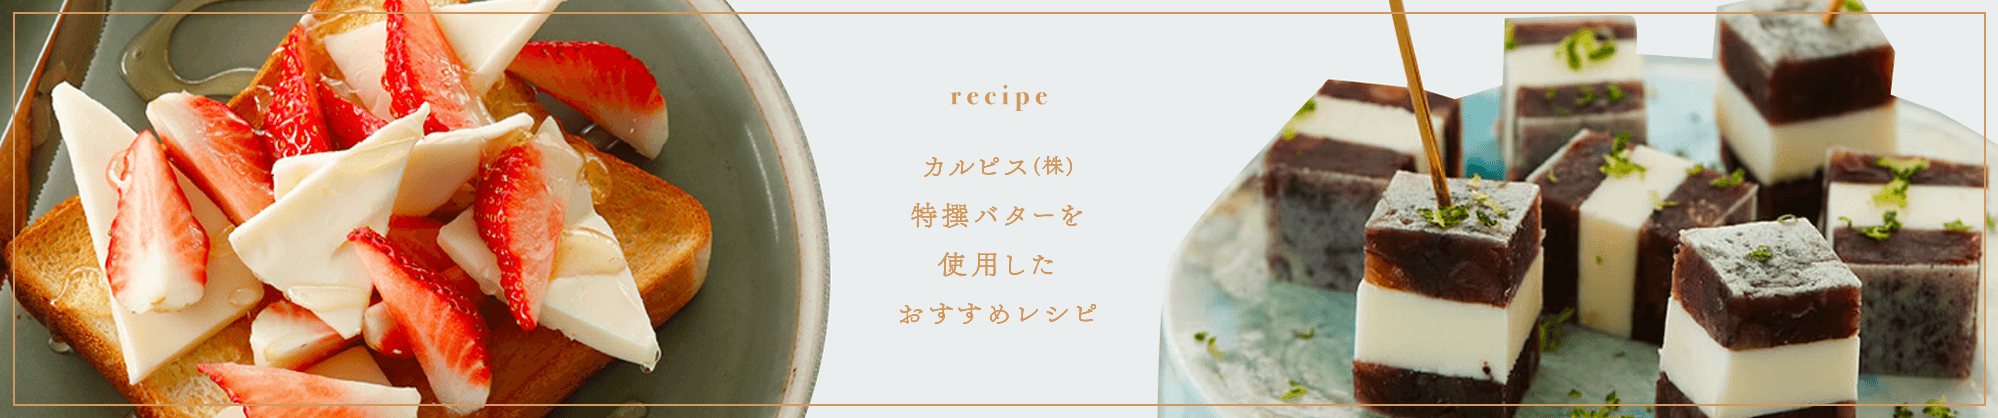 recipe カルピス(株)特撰バターを使ったおすすめレシピ